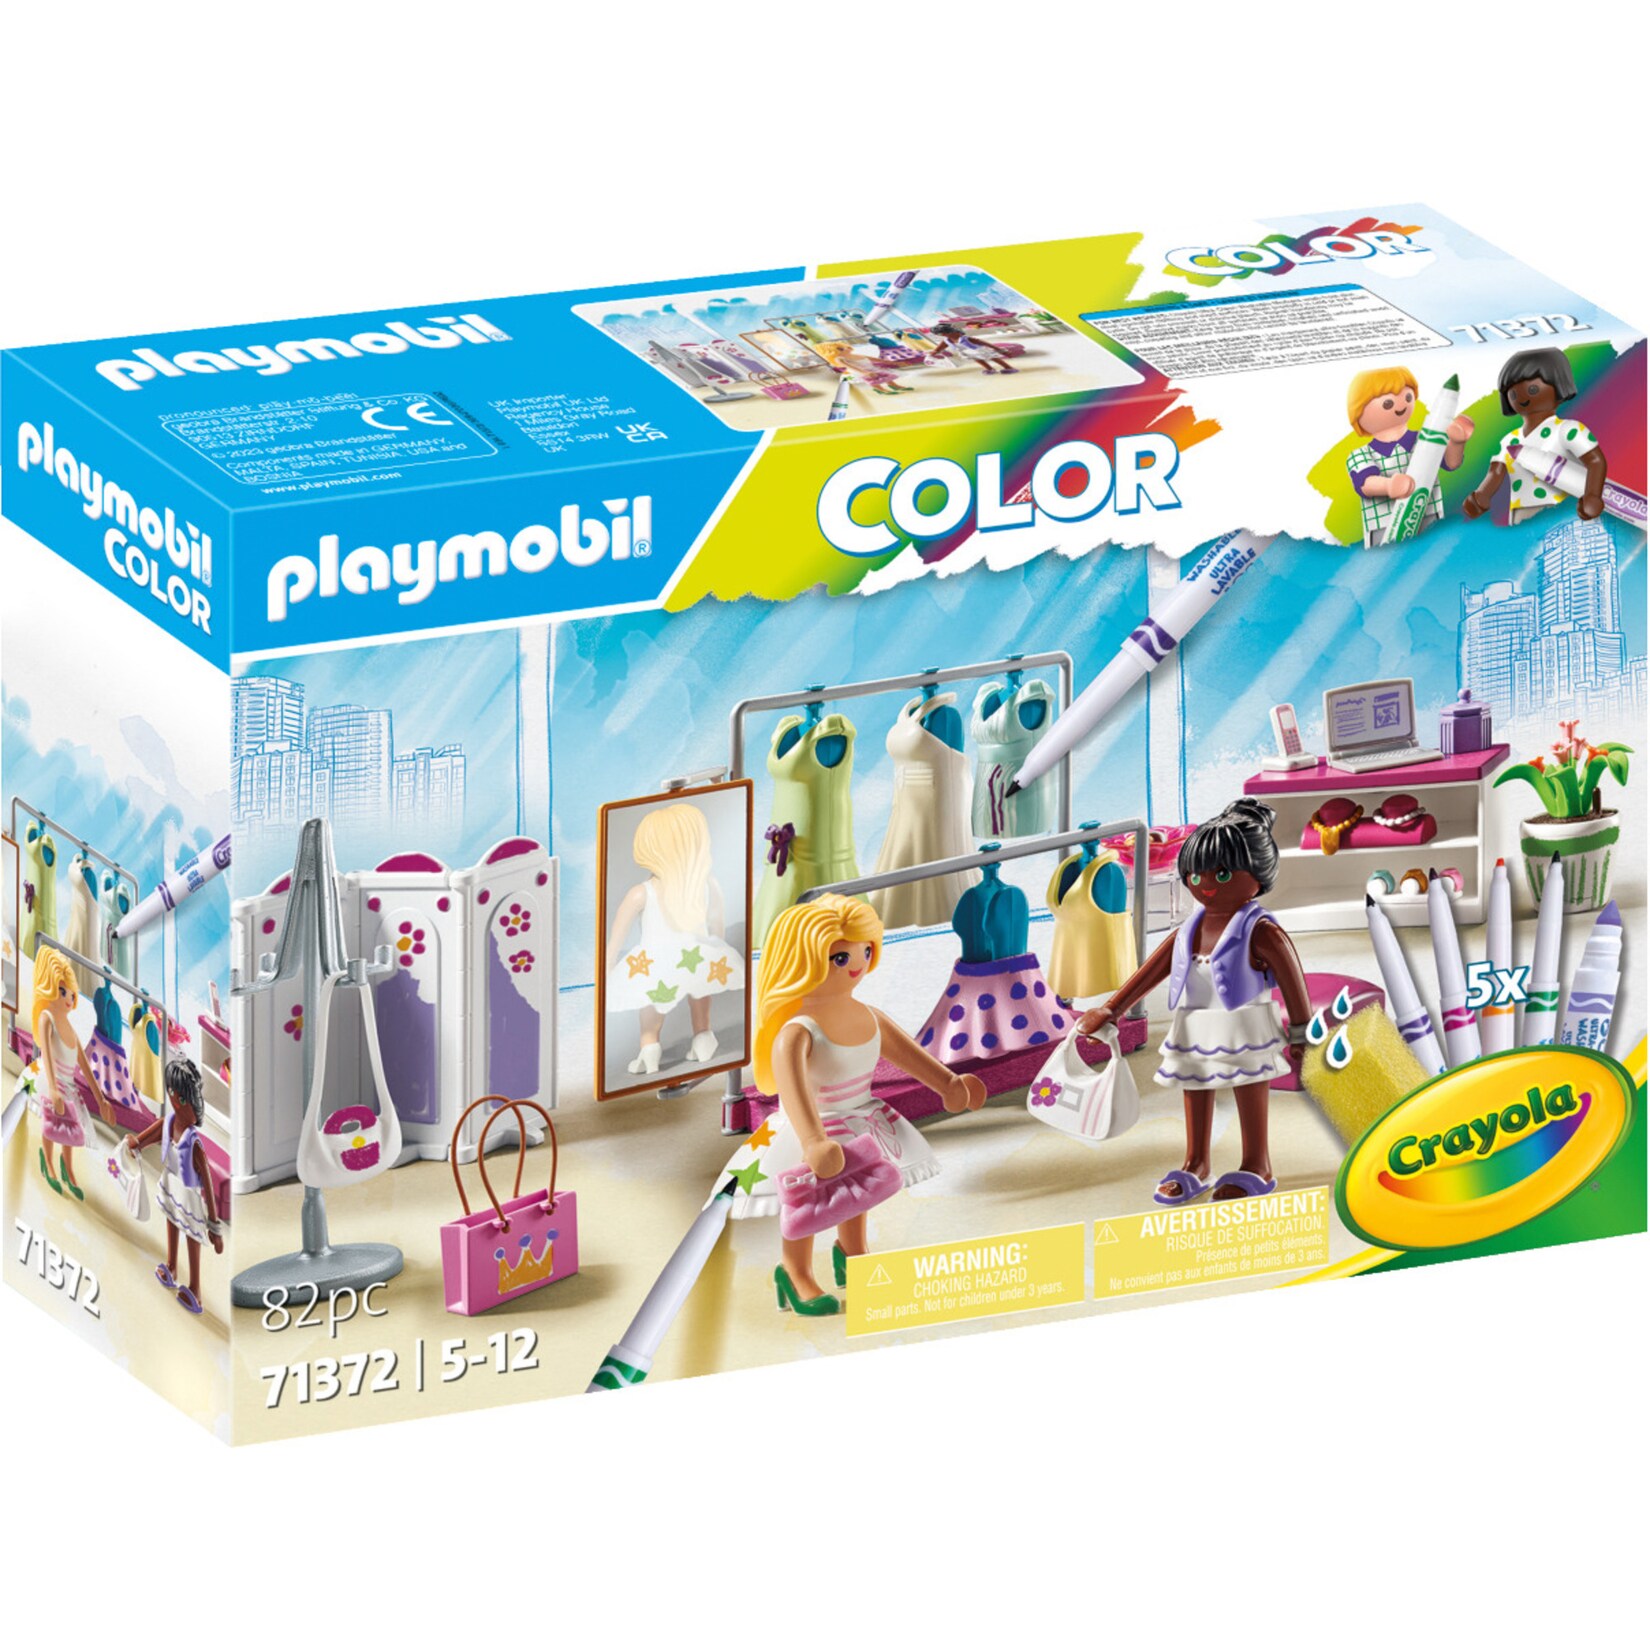 PLAYMOBIL Konstruktionsspielzeug Color Fashionboutique